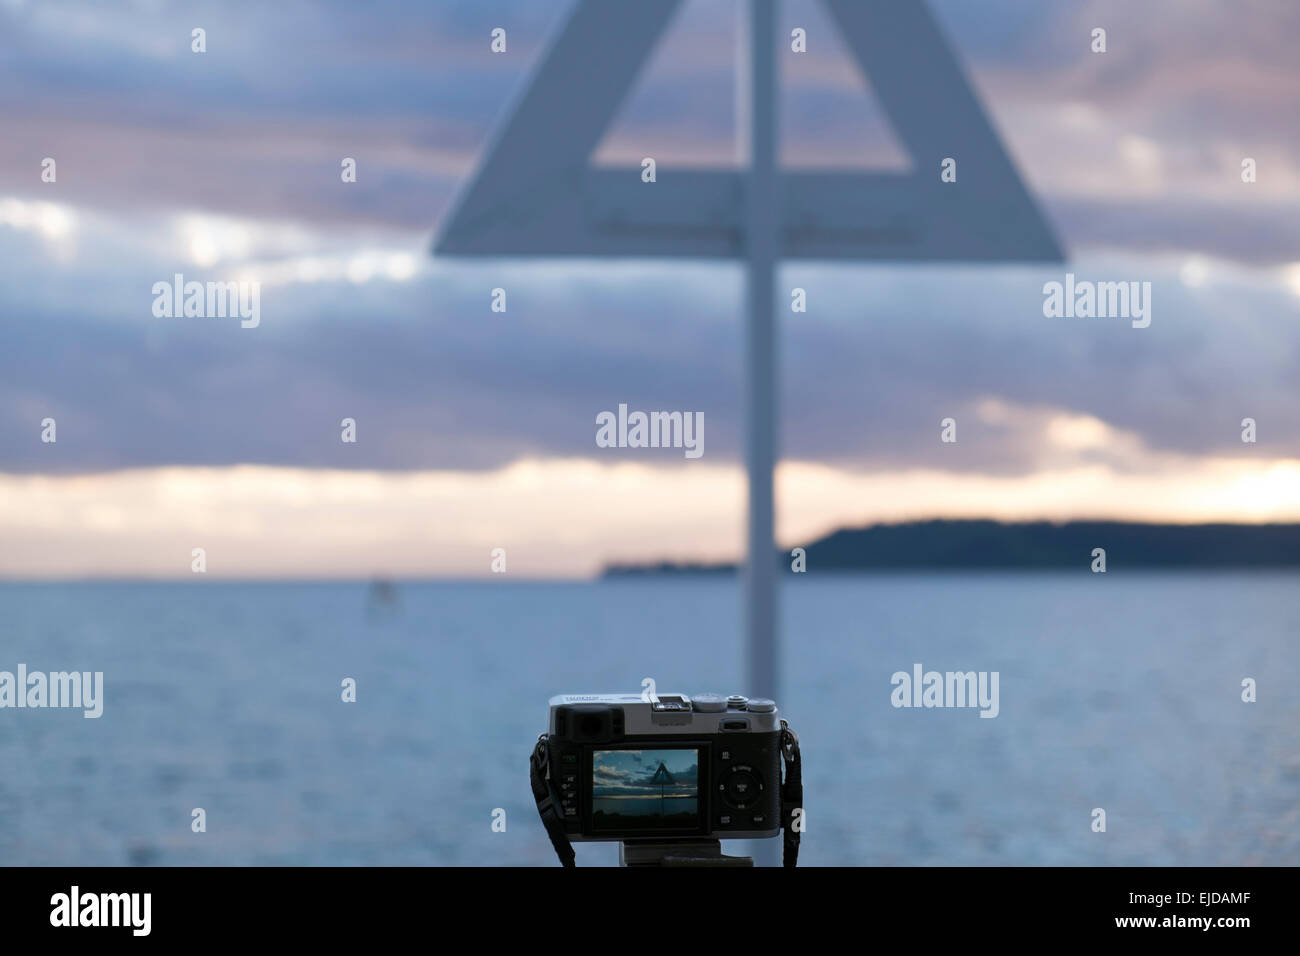 Fujifilm X100 fotocamera impostata su un treppiede con scena visibile nel lunotto al Lago Taupo, Nuova Zelanda. Foto Stock